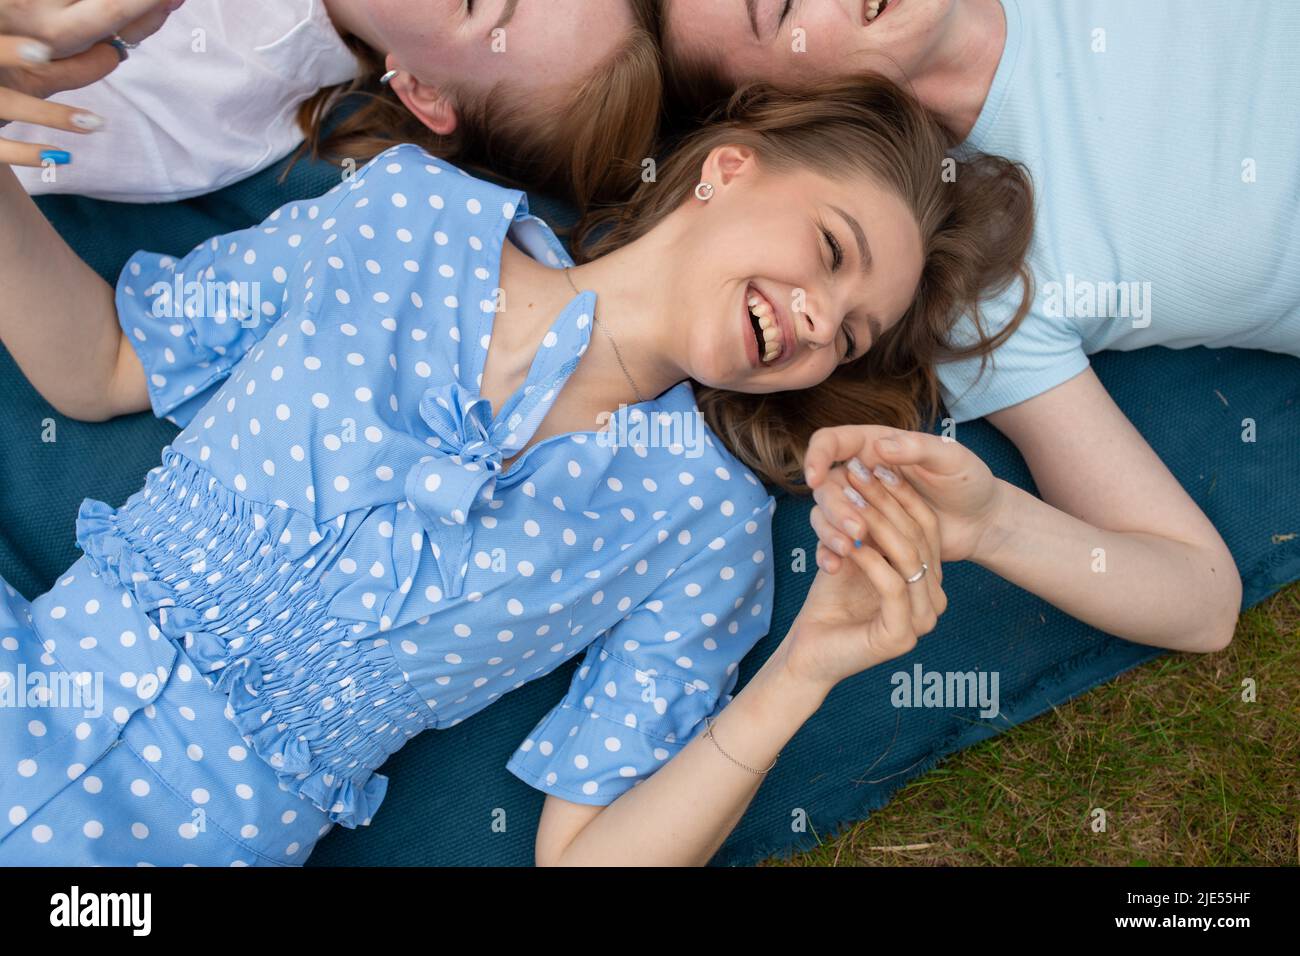 Lachende junge Mädchen, die auf einer blauen Decke auf grünem Gras liegen und die Hände aus der Nähe halten. Spaß haben und glückliche Momente im Freien genießen. Mädchen Stockfoto